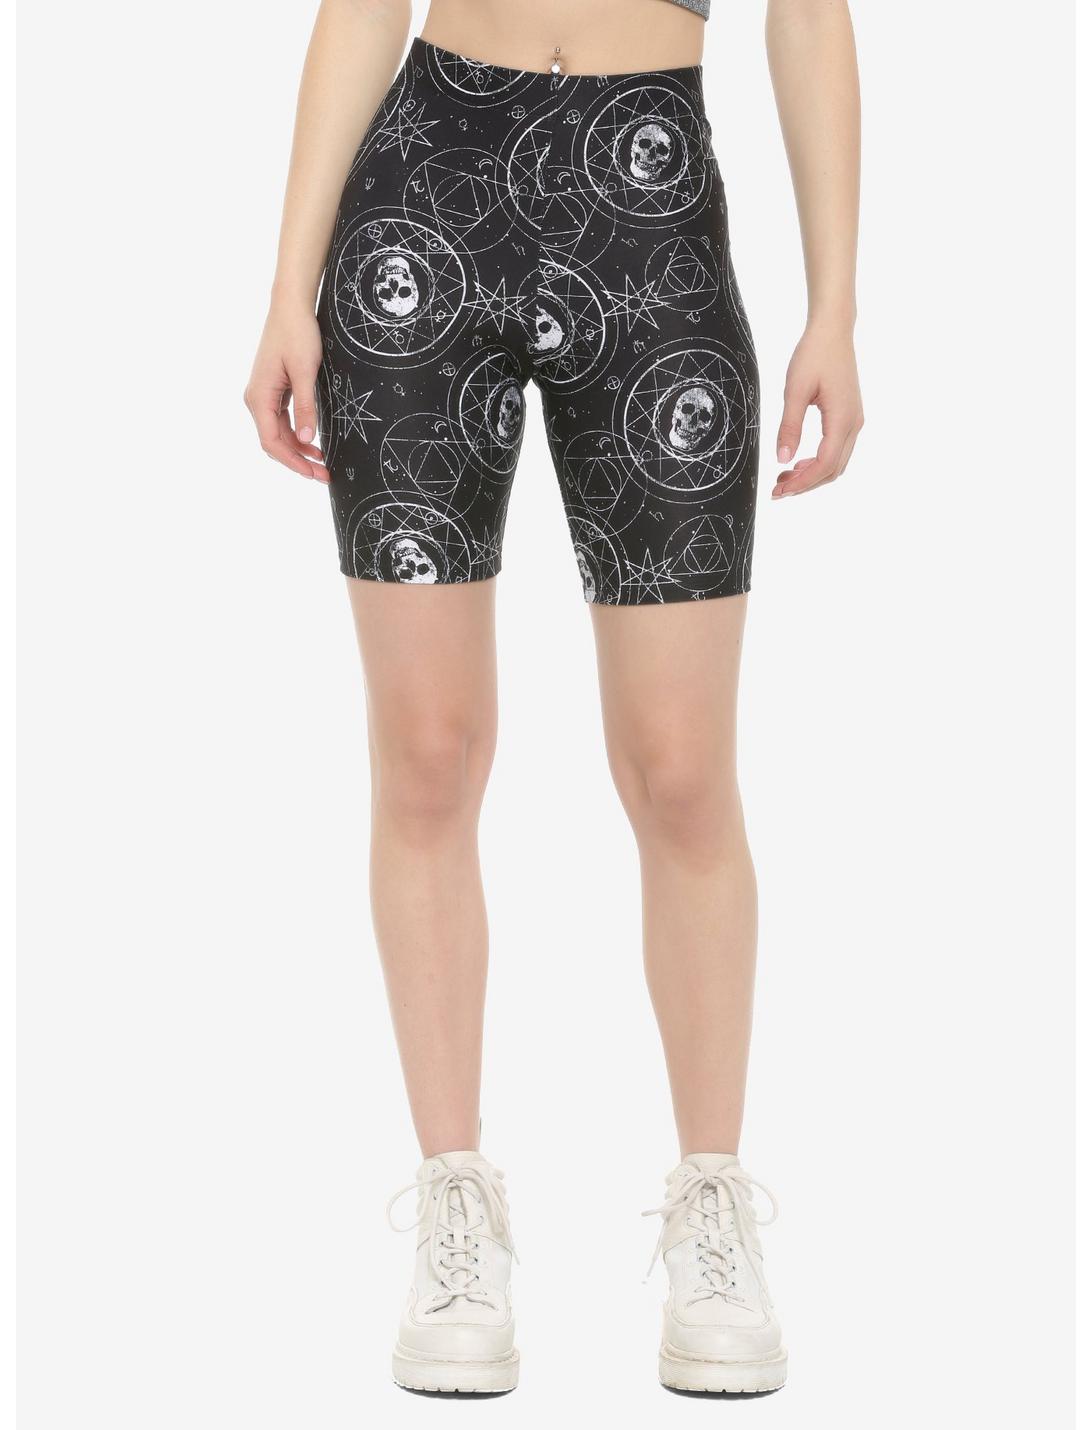 Celestial Skull Girls Bike Shorts, BLACK, hi-res